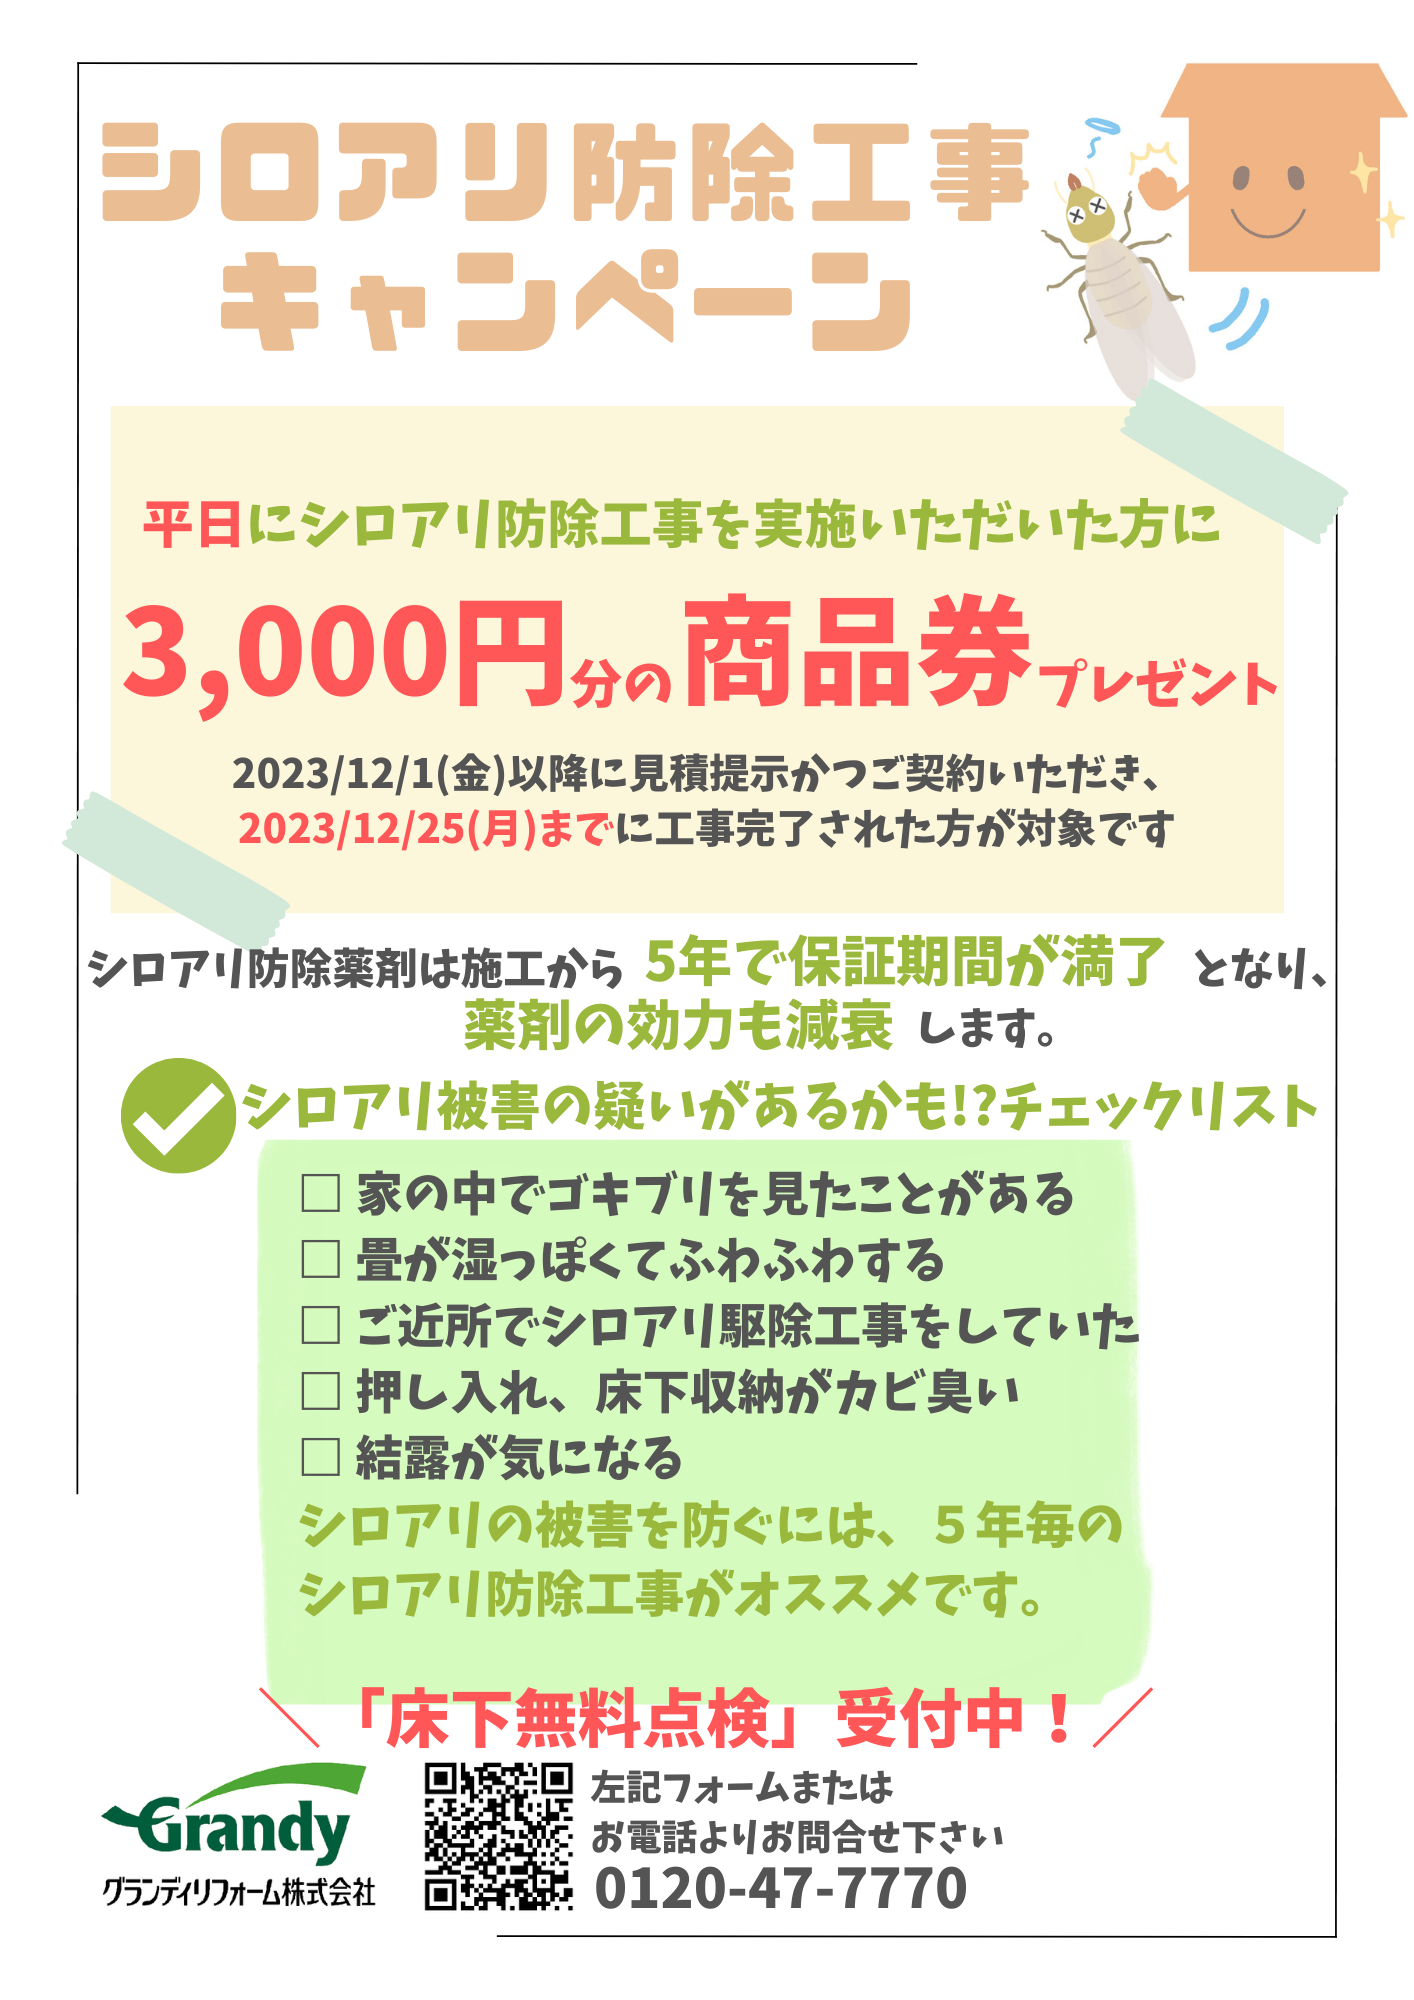 平日シロアリ防除工事　商品券3,000円分プレゼントキャンペーン！